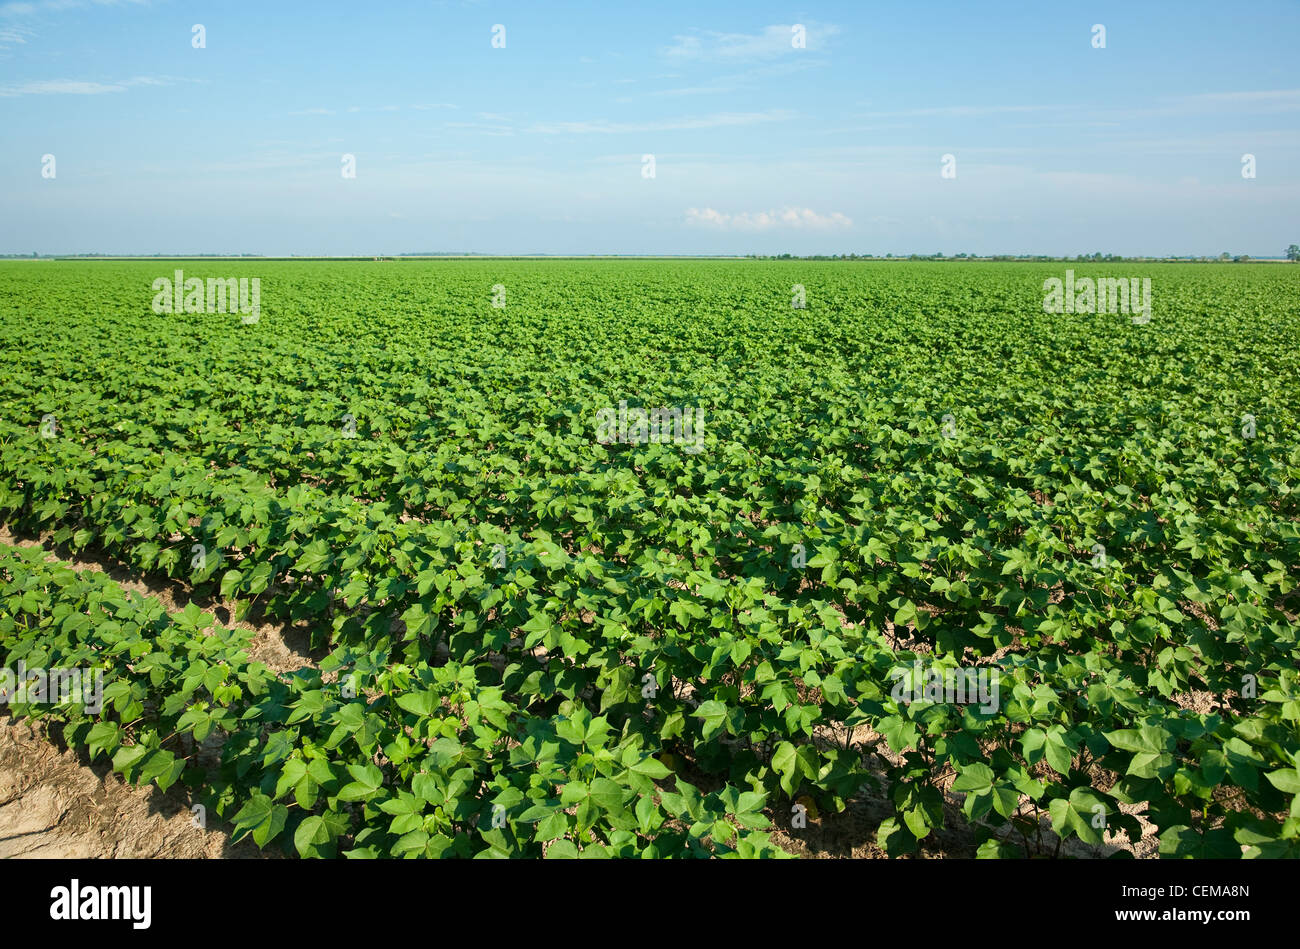 Agricultura - gran campo de algodón de crecimiento medio de boll fijó el escenario / cerca de Inglaterra, Arkansas, Estados Unidos. Foto de stock